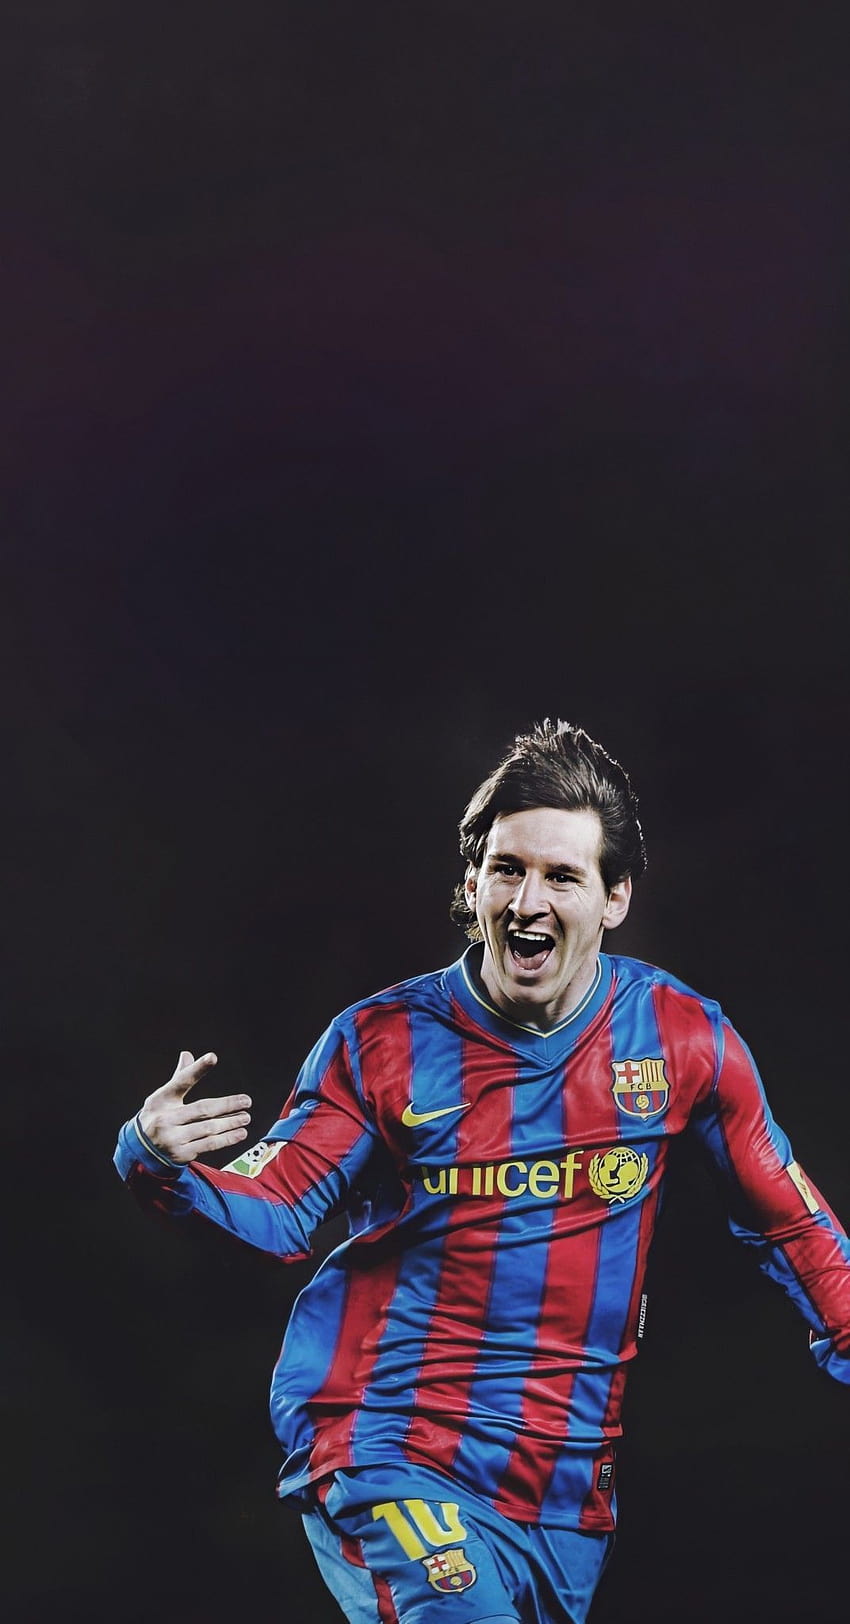 Xem hình Messi trẻ sắc nét HD để chiêm ngưỡng tài năng của siêu sao bóng đá này từ khi còn rất trẻ. Hứa hẹn đem lại những cảm xúc tuyệt vời cho các fan hâm mộ bóng đá.